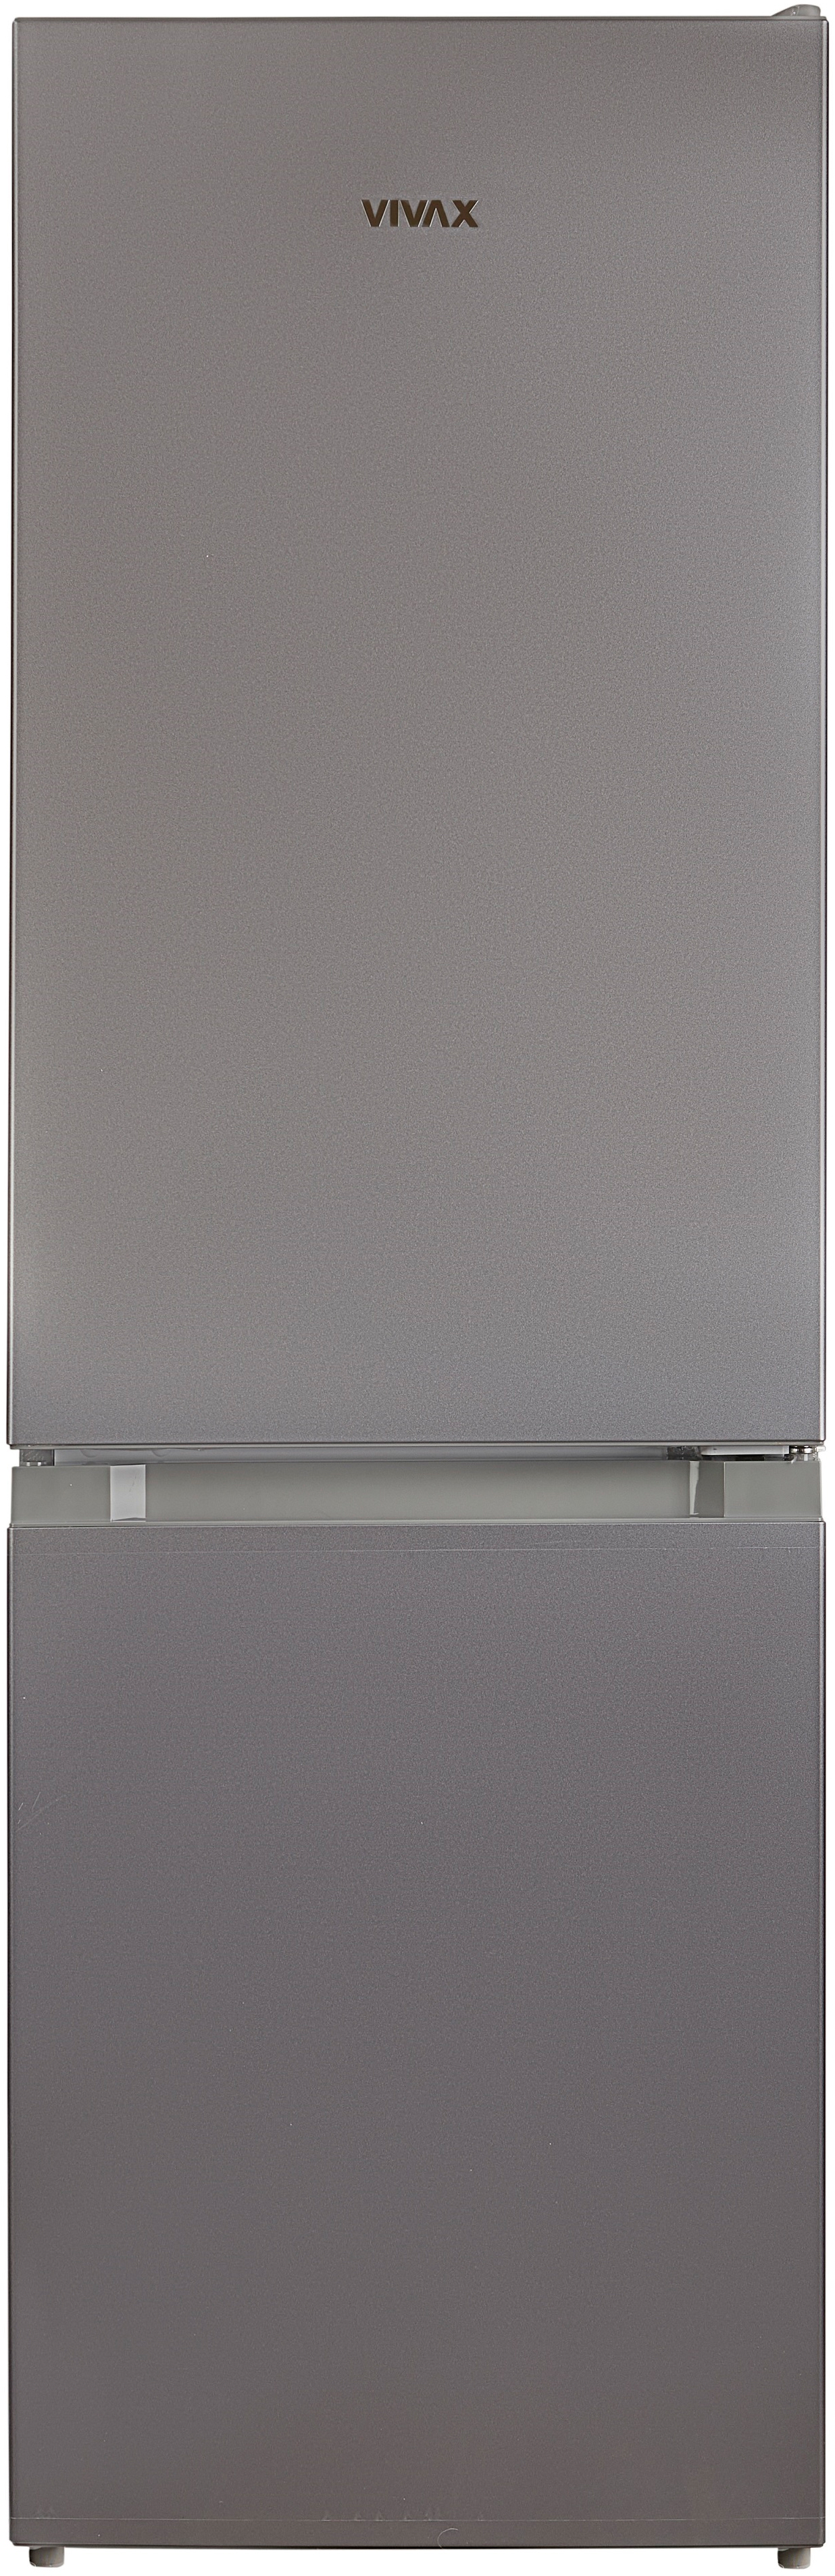 Холодильник Vivax CF-174 LF S в интернет-магазине, главное фото